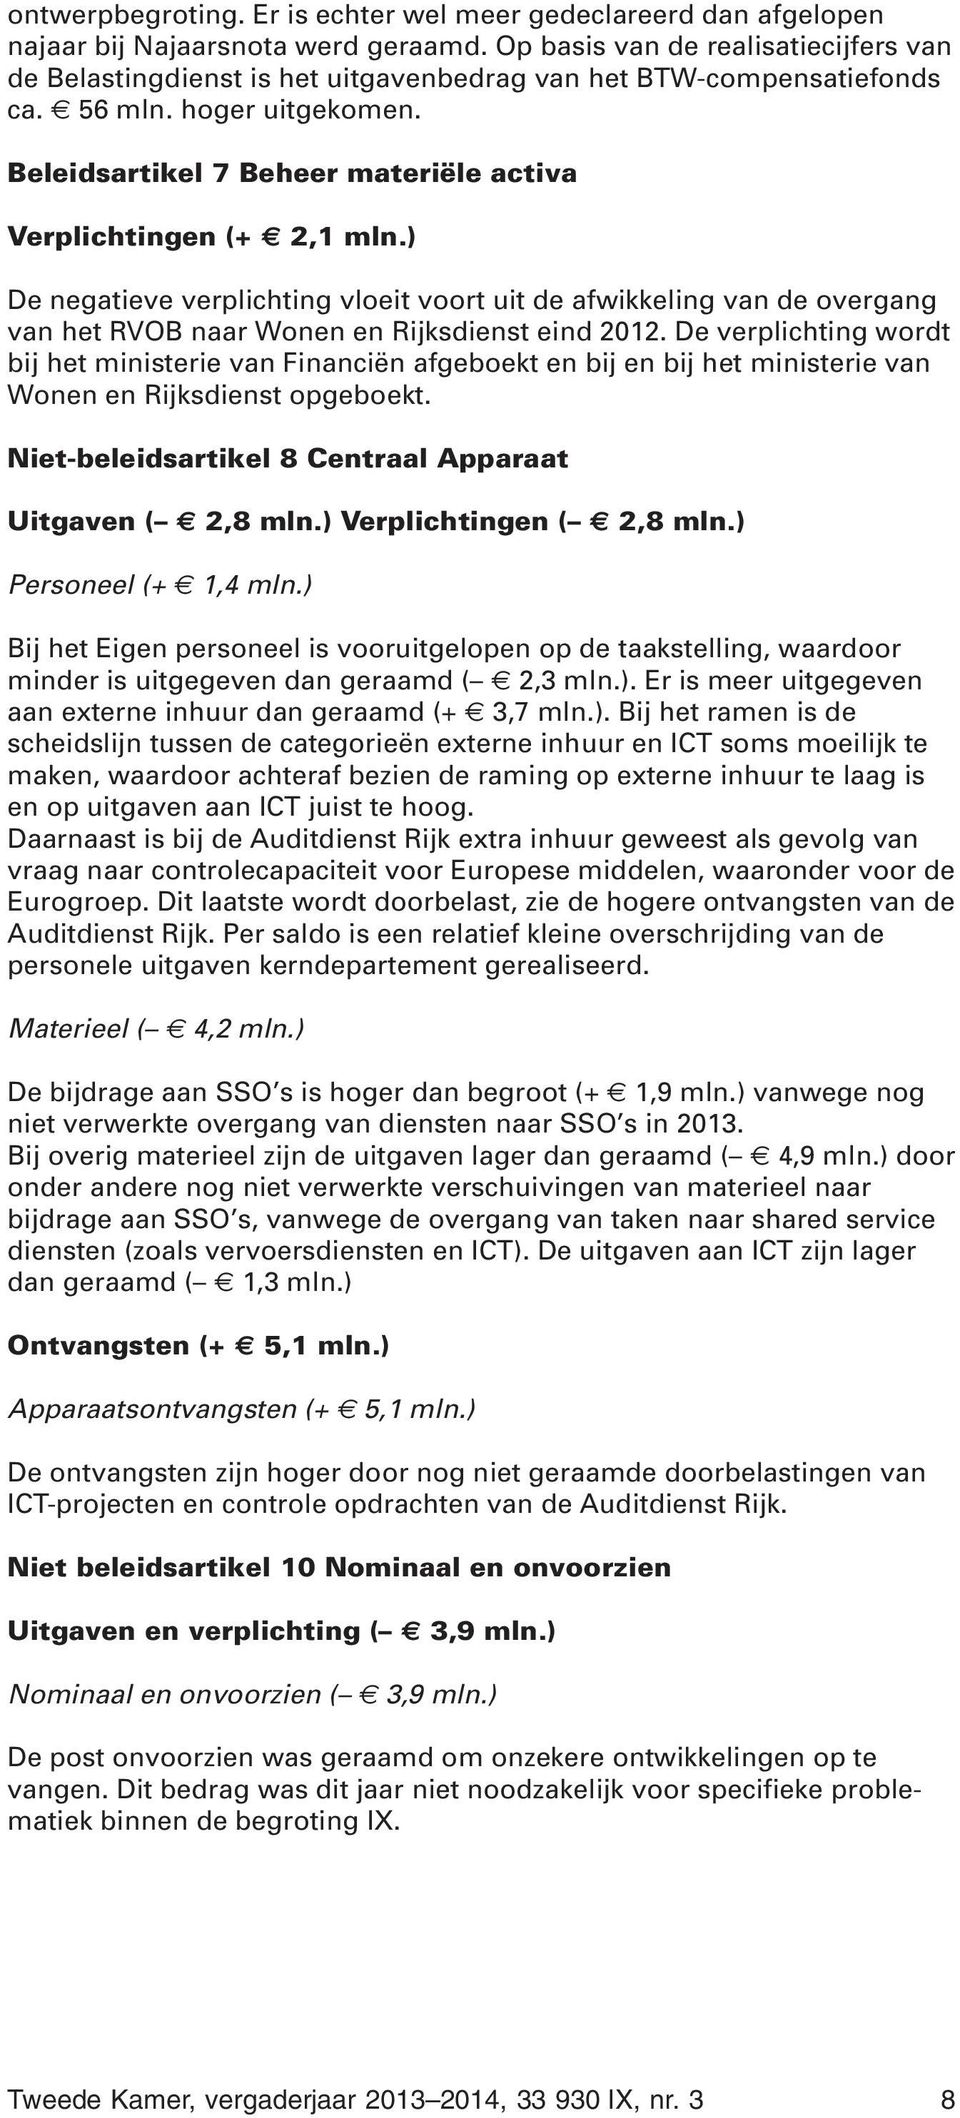 Beleidsartikel 7 Beheer materiële activa Verplichtingen (+ 2,1 mln.) De negatieve verplichting vloeit voort uit de afwikkeling van de overgang van het RVOB naar Wonen en Rijksdienst eind 2012.